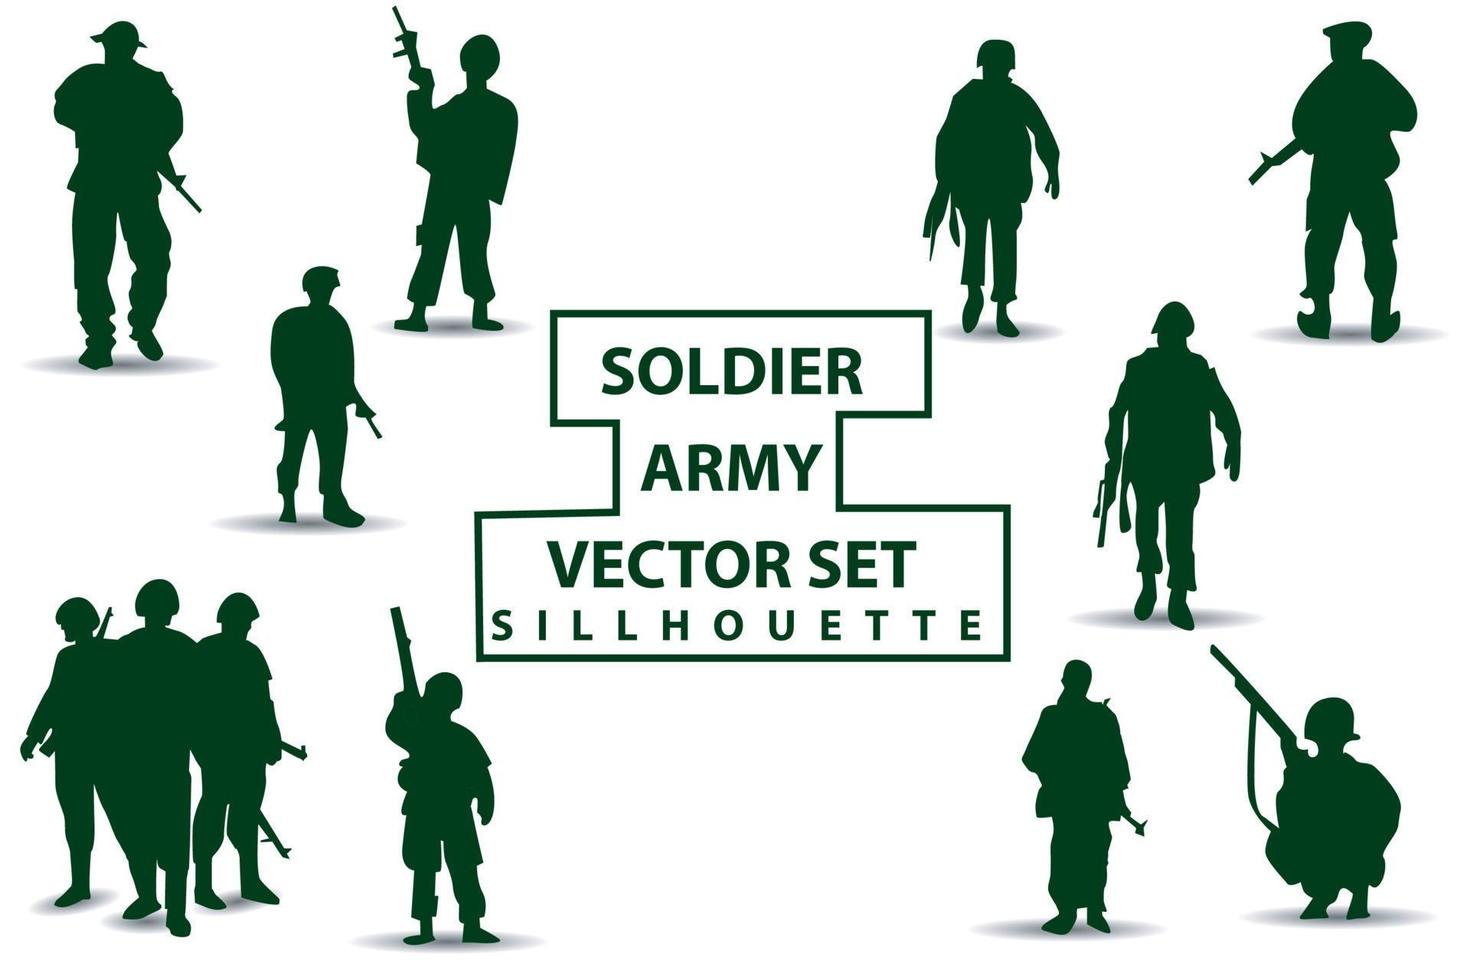 silhouettes vectorielles de soldats groupe 1 équipe divers styles tenant des armes, se préparant au combat, vêtements verts isolés sur fond blanc vecteur